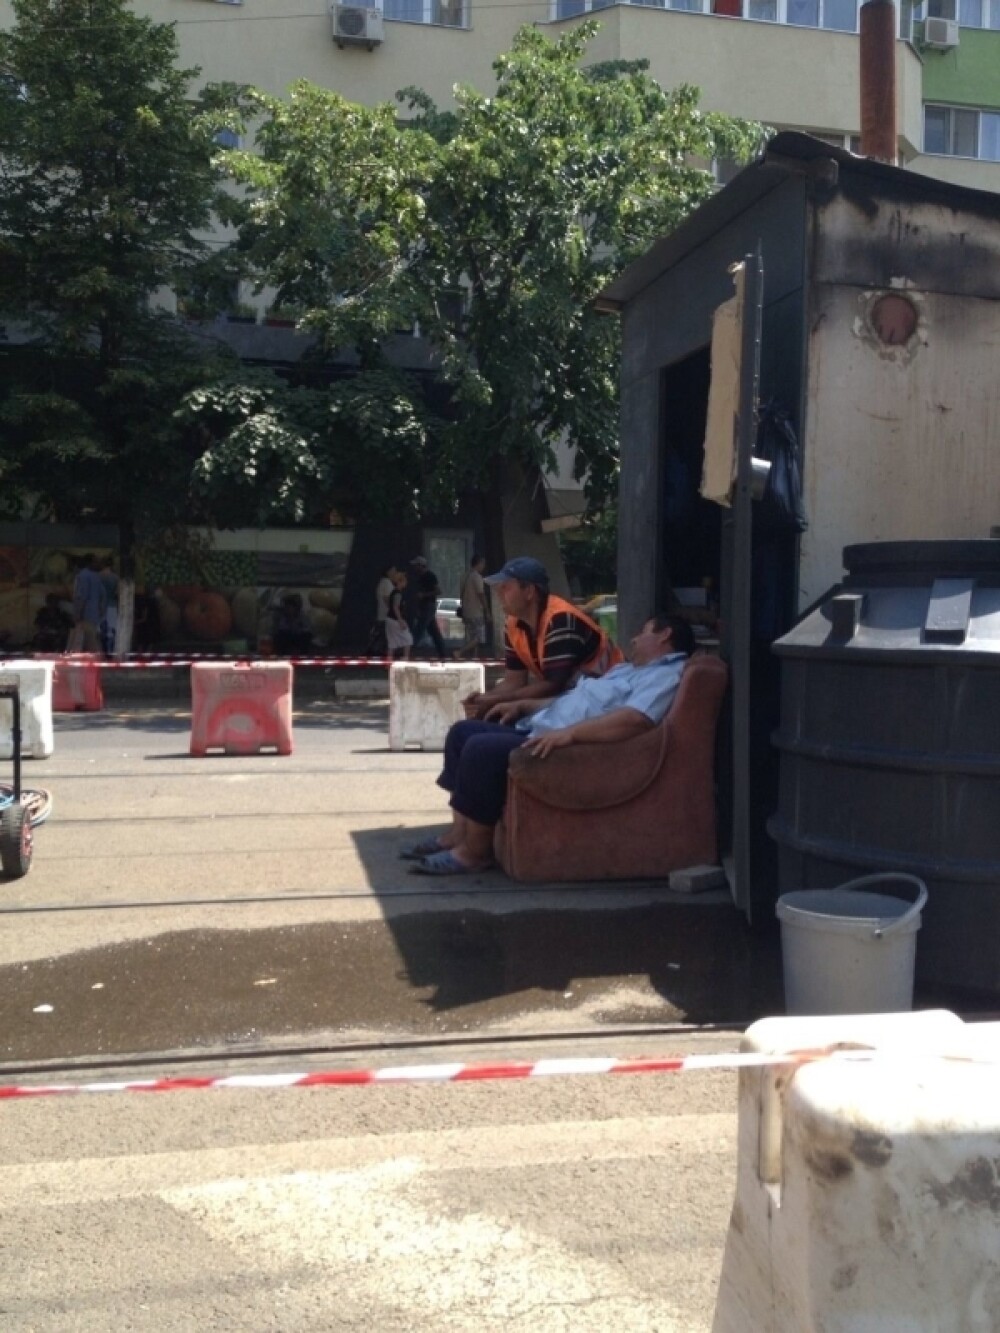 Imaginea zilei in Capitala. Cum dorm muncitorii ce ar trebui sa reabiliteze liniile de tramvai. FOTO - Imaginea 1